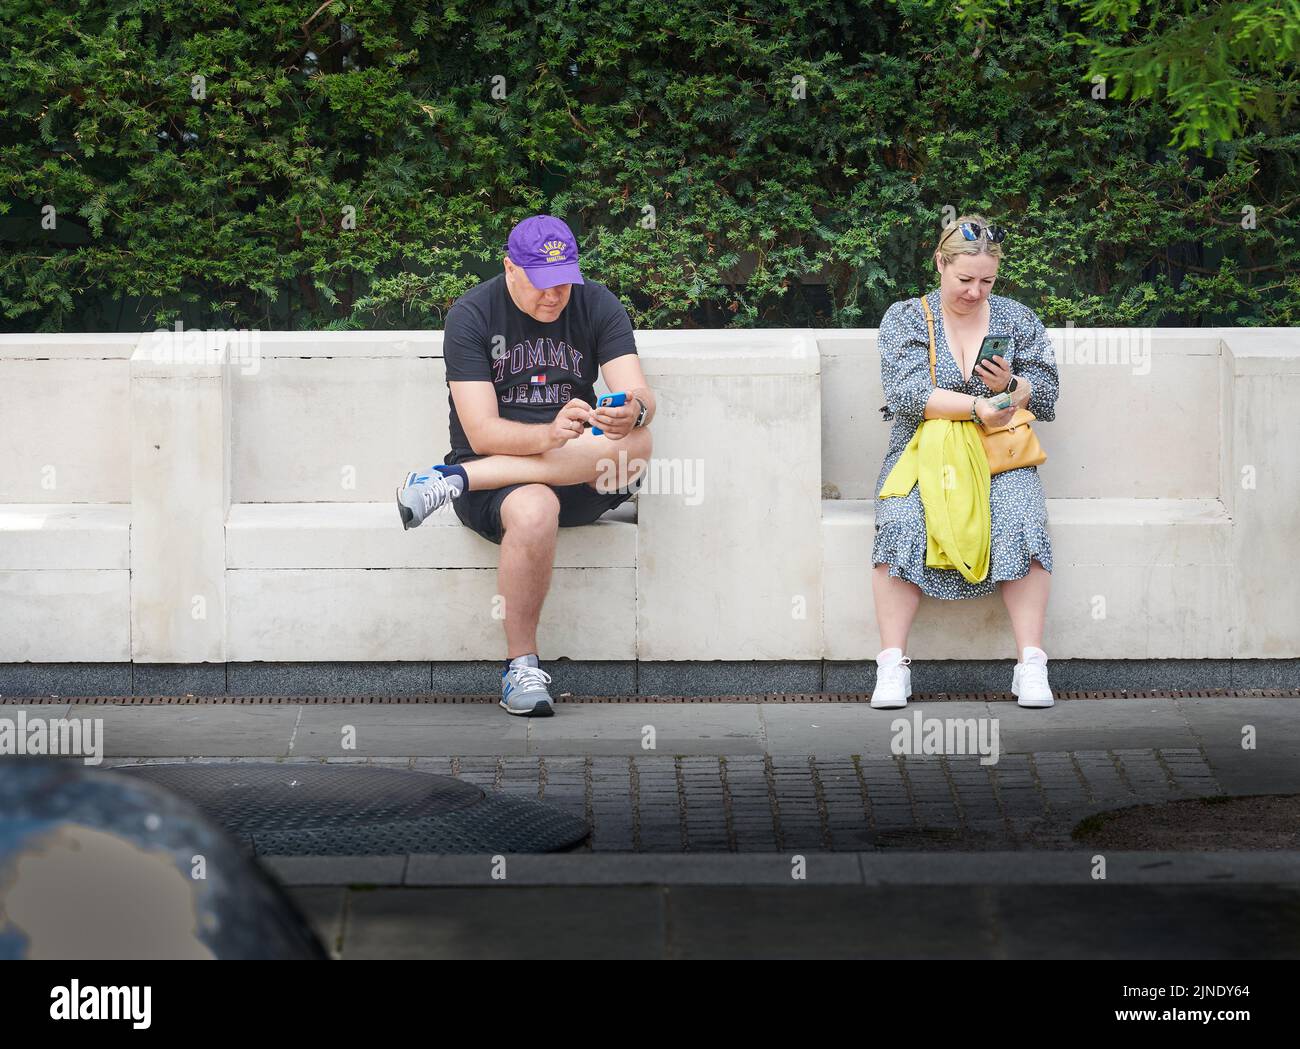 Ein Duo entspannt sich, während sie auf einer Steinbank sitzen und ihre Telefone auf Peter's Hill, St. Paul's, London, England, betrachten. Stockfoto